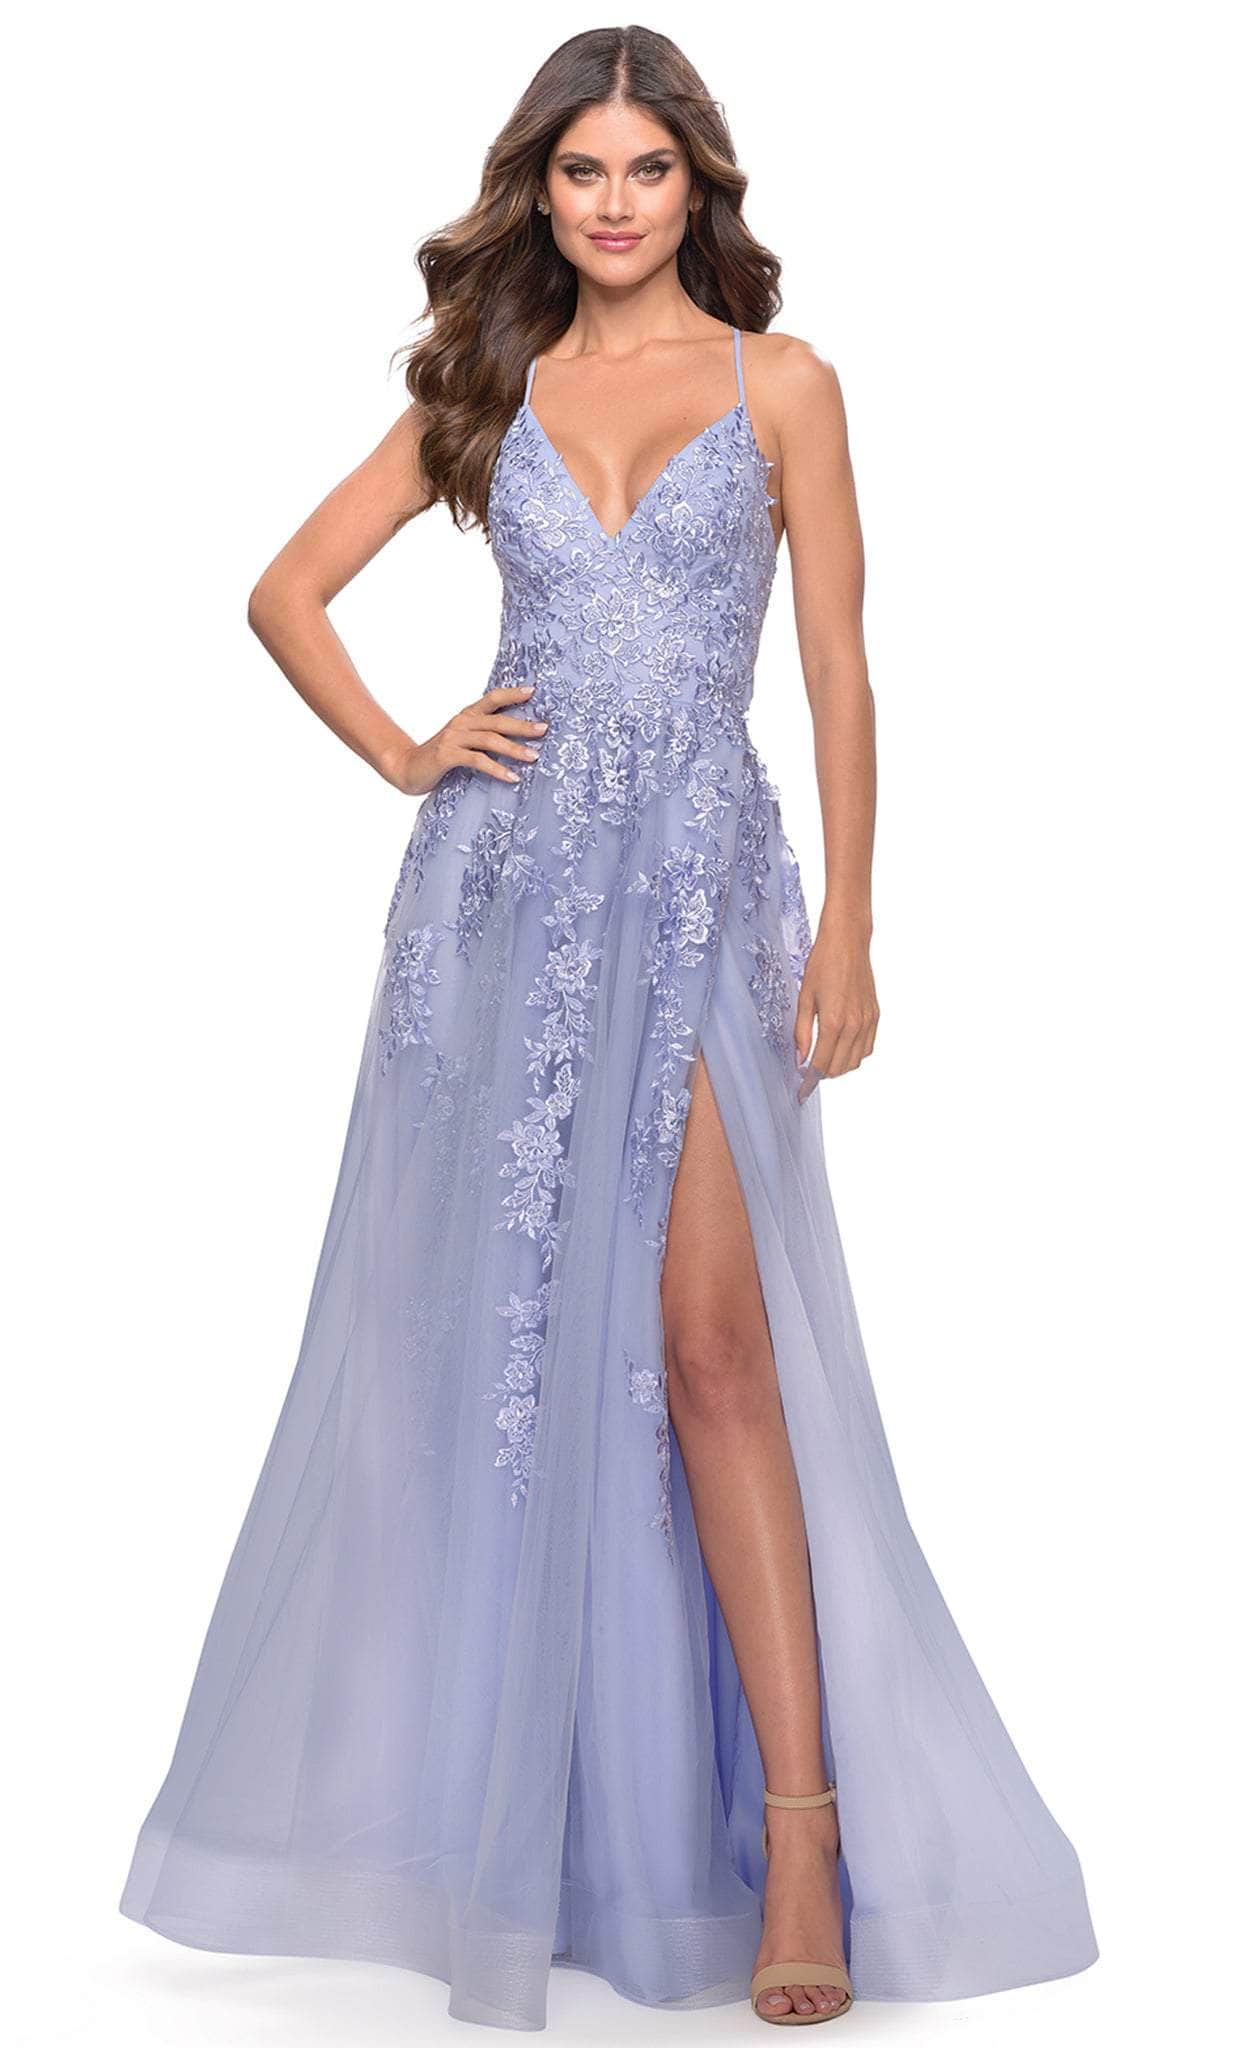 La Femme 31503 - Floral Lace Dress